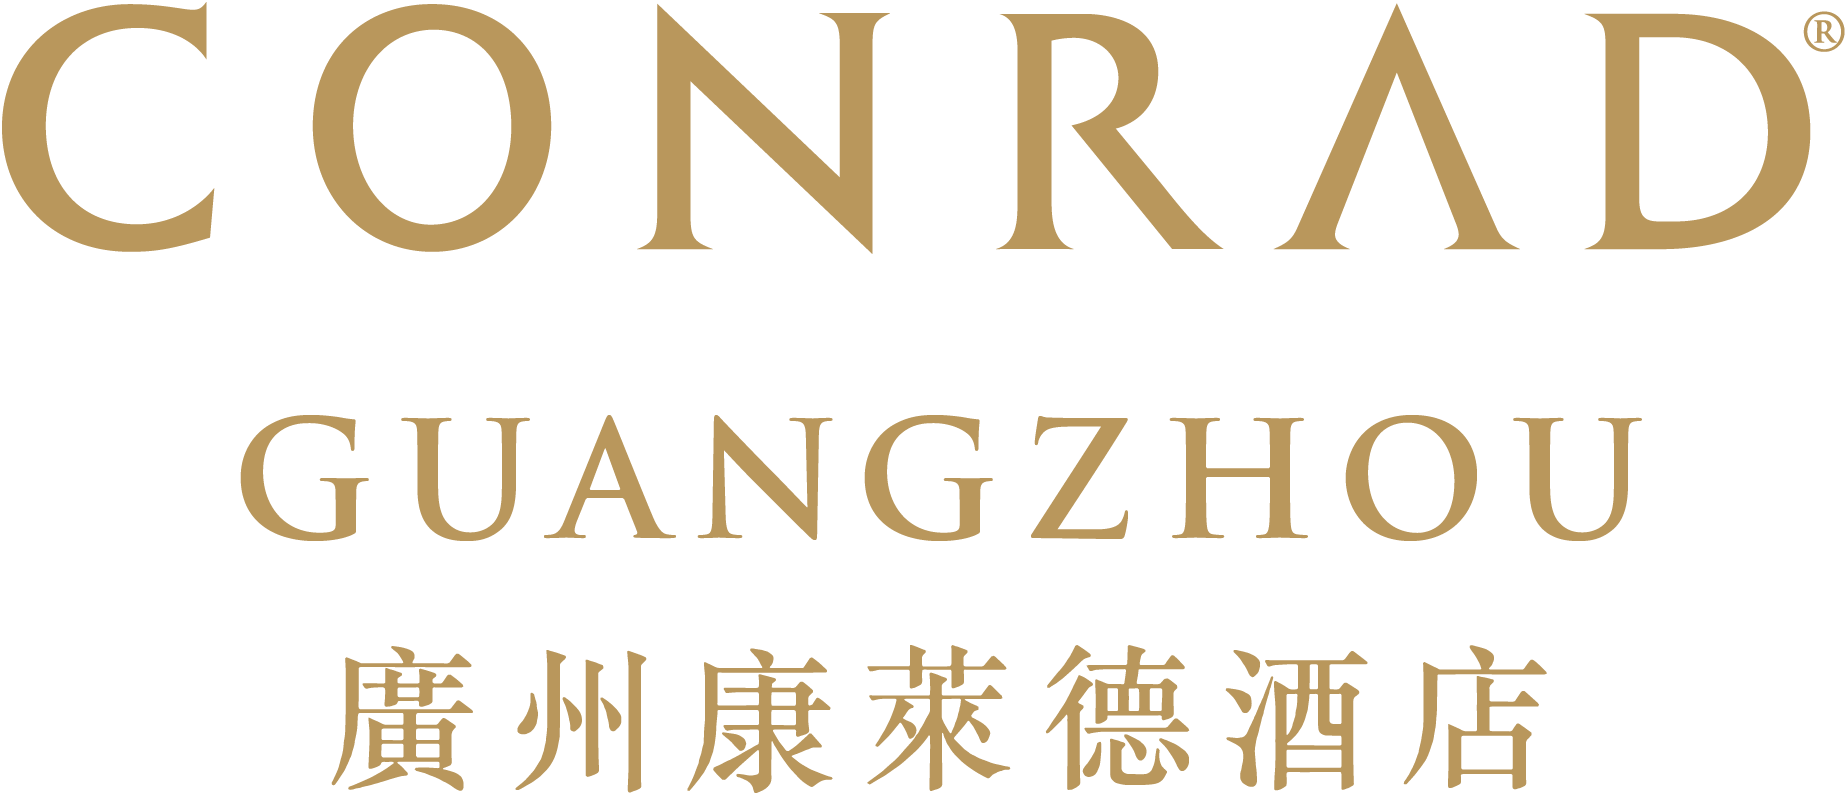 1258_Conrad-Guangzhou-Logo-01.png